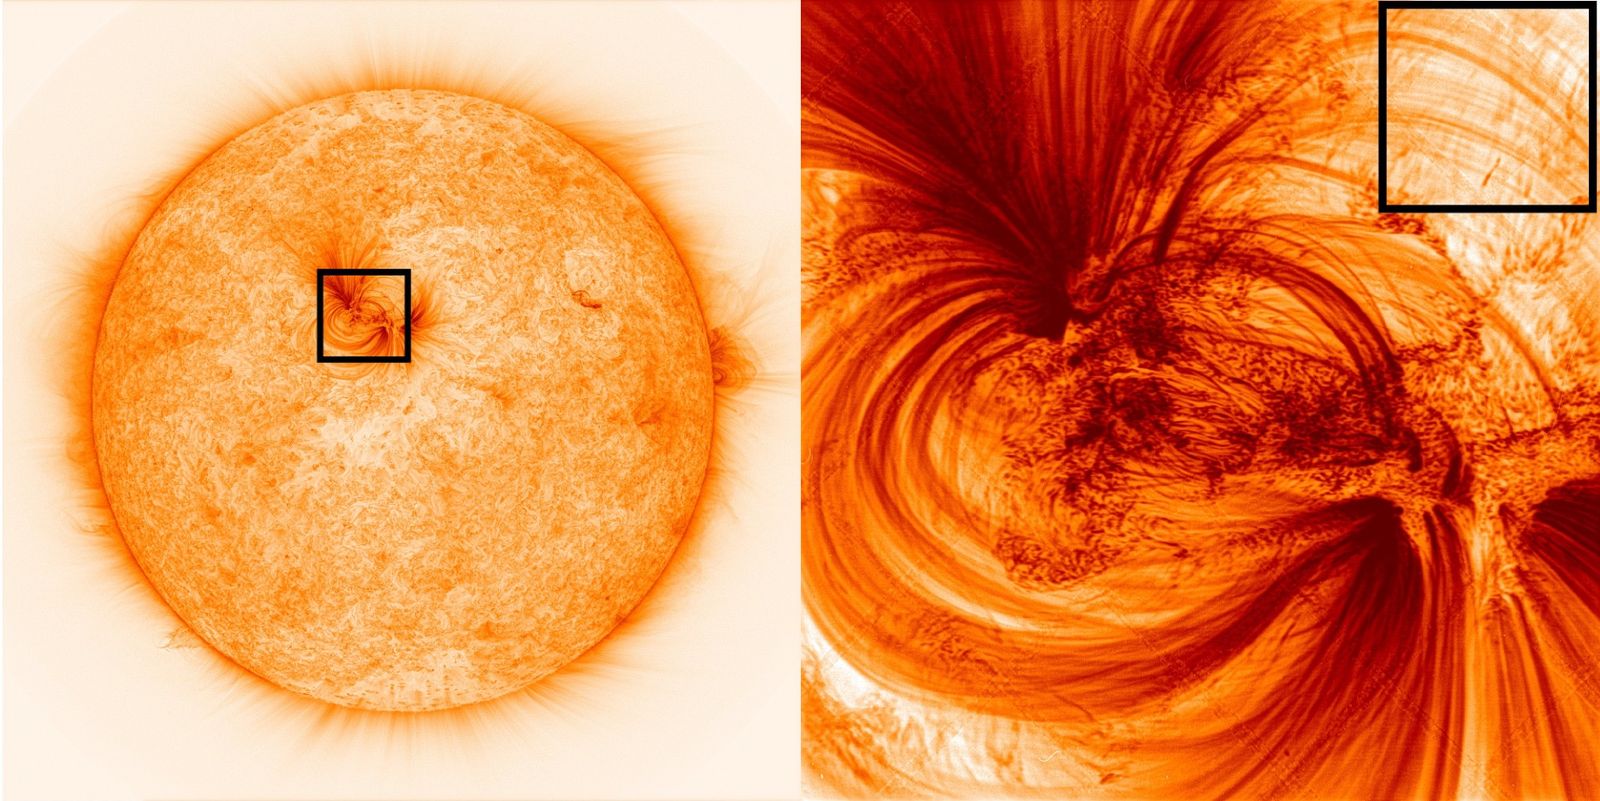 ภาพถ่ายดวงอาทิตย์จากกล้องโทรทรรศน์ Hi-C เผยให้เห็นชั้นบรรยากาศดวงอาทิตย์ที่ความละเอียดสูงสุด